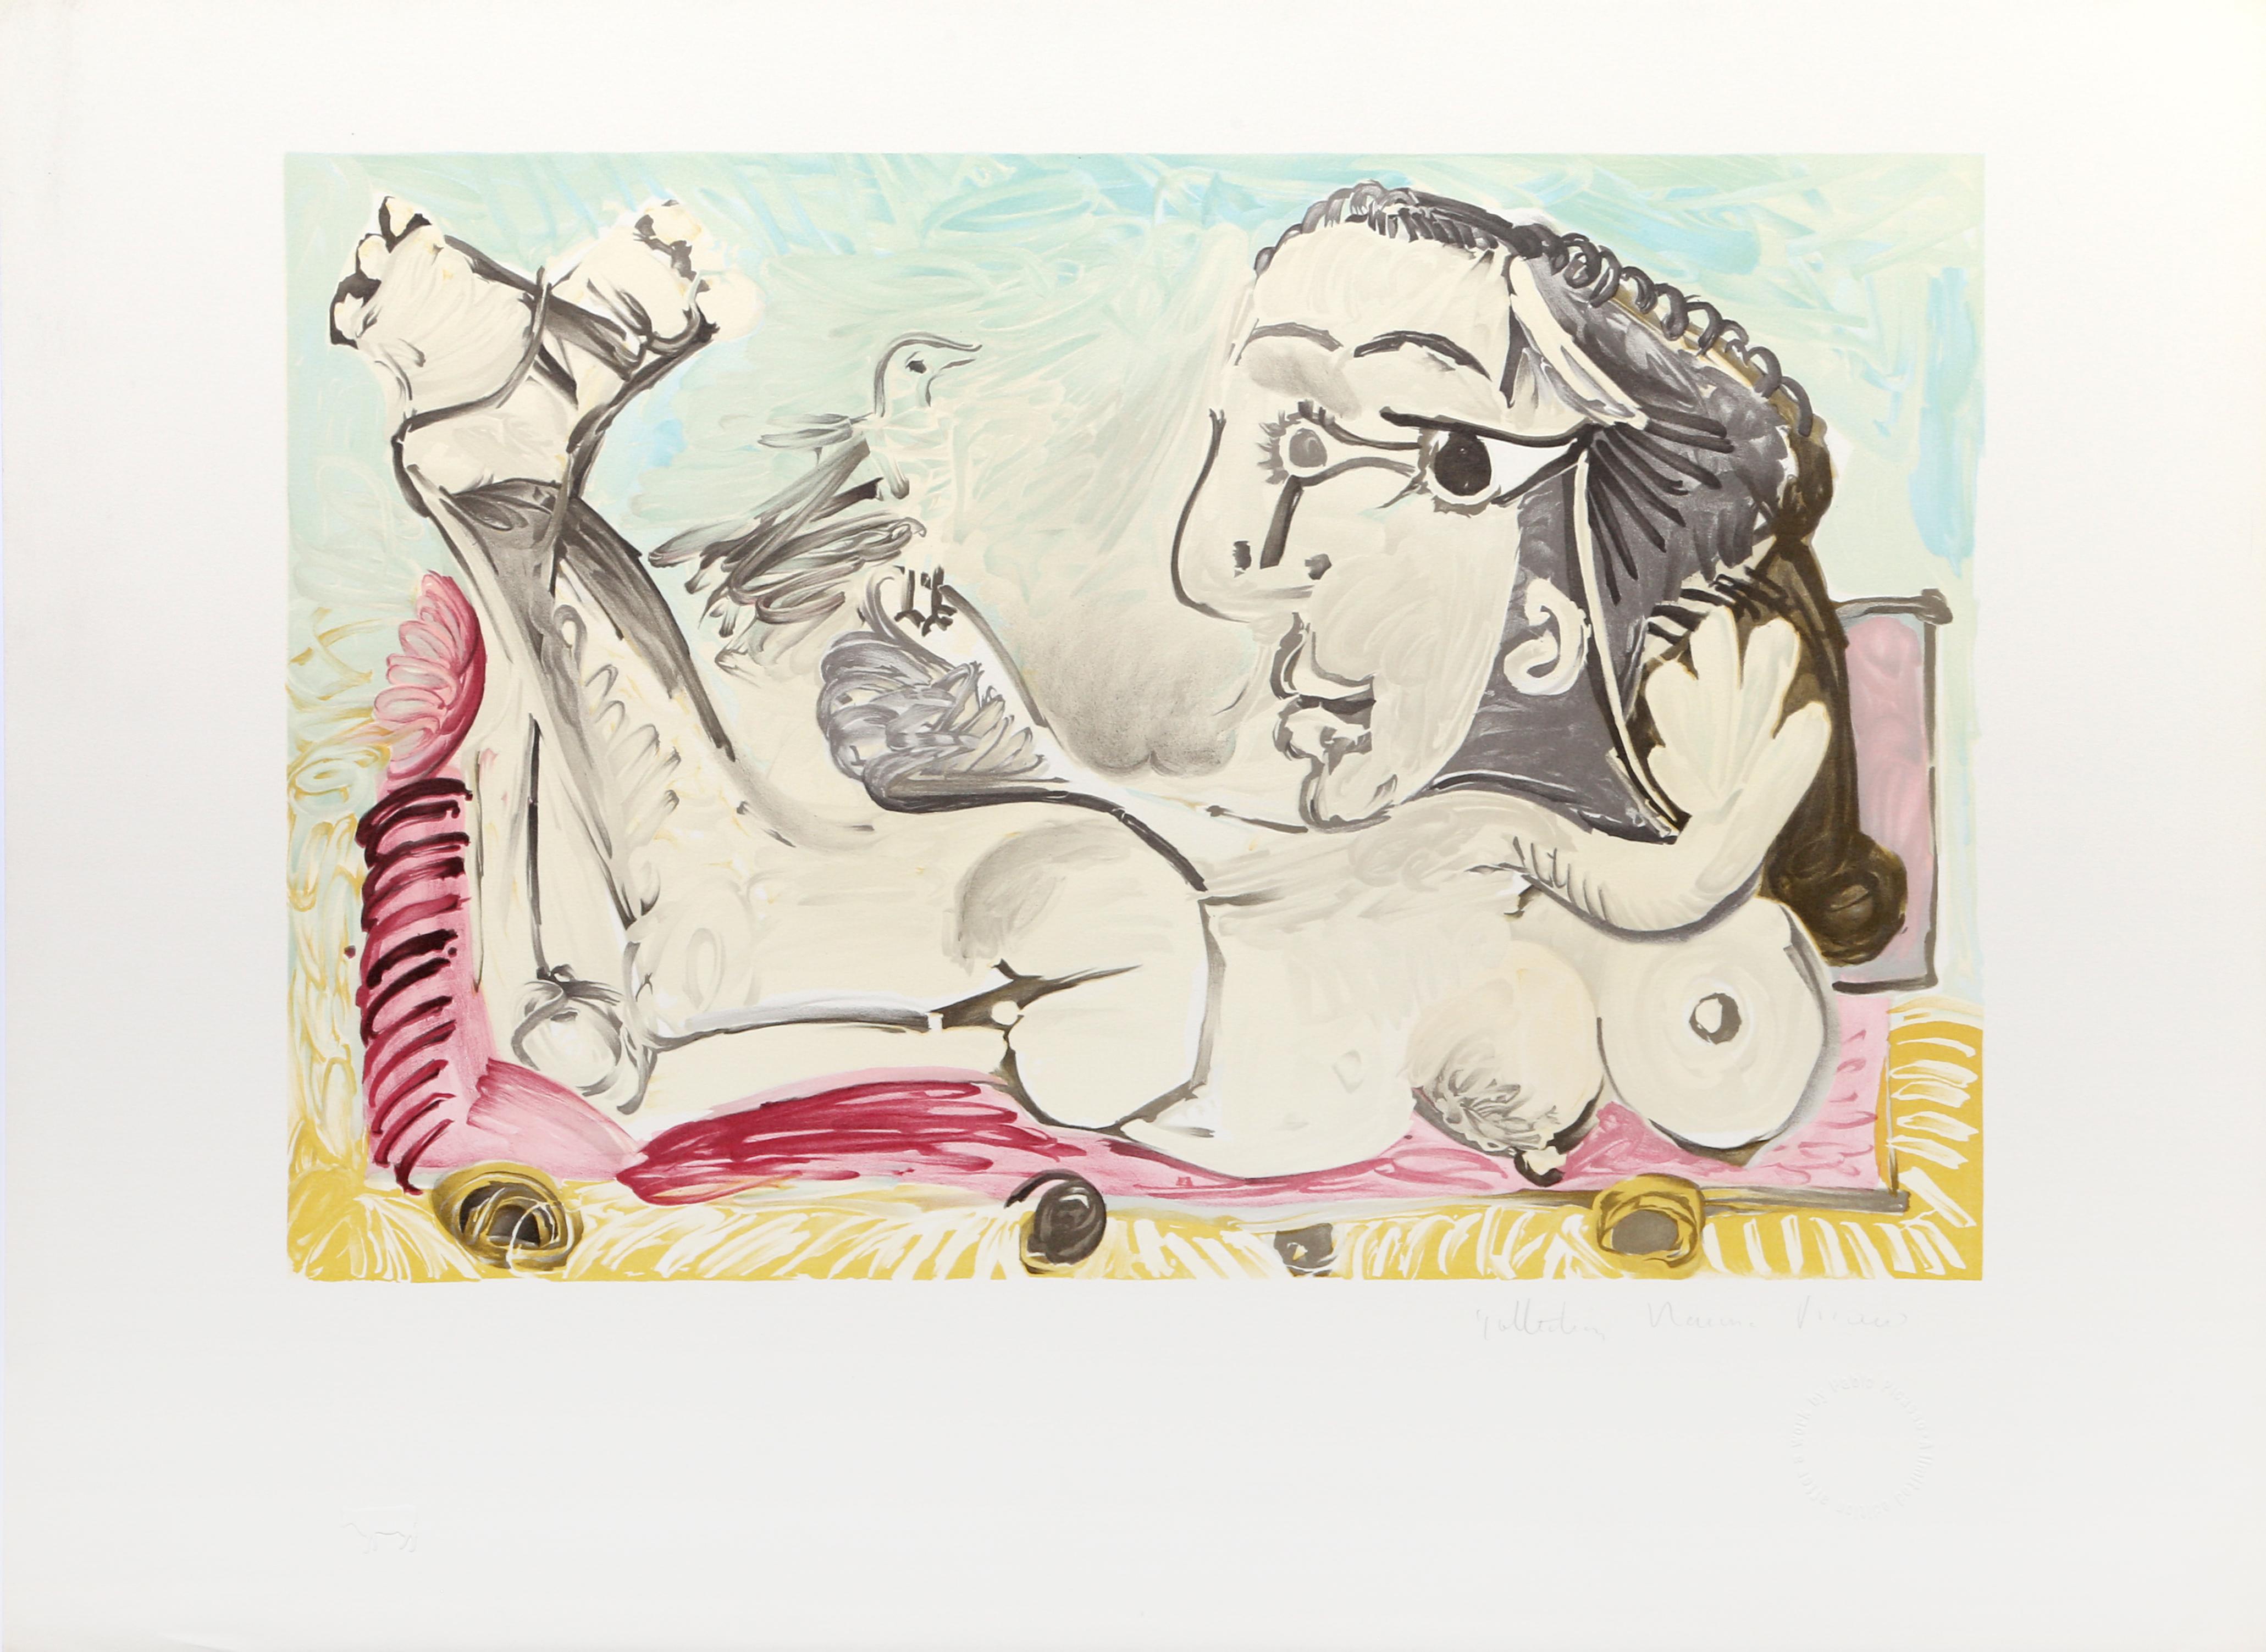 La manipulation de la perspective par Pablo Picasso crée une représentation complexe d'une femme nue. Sa représentation de la figure féminine comprend de multiples points de vue qui se combinent pour former une série de parties du corps et de poses